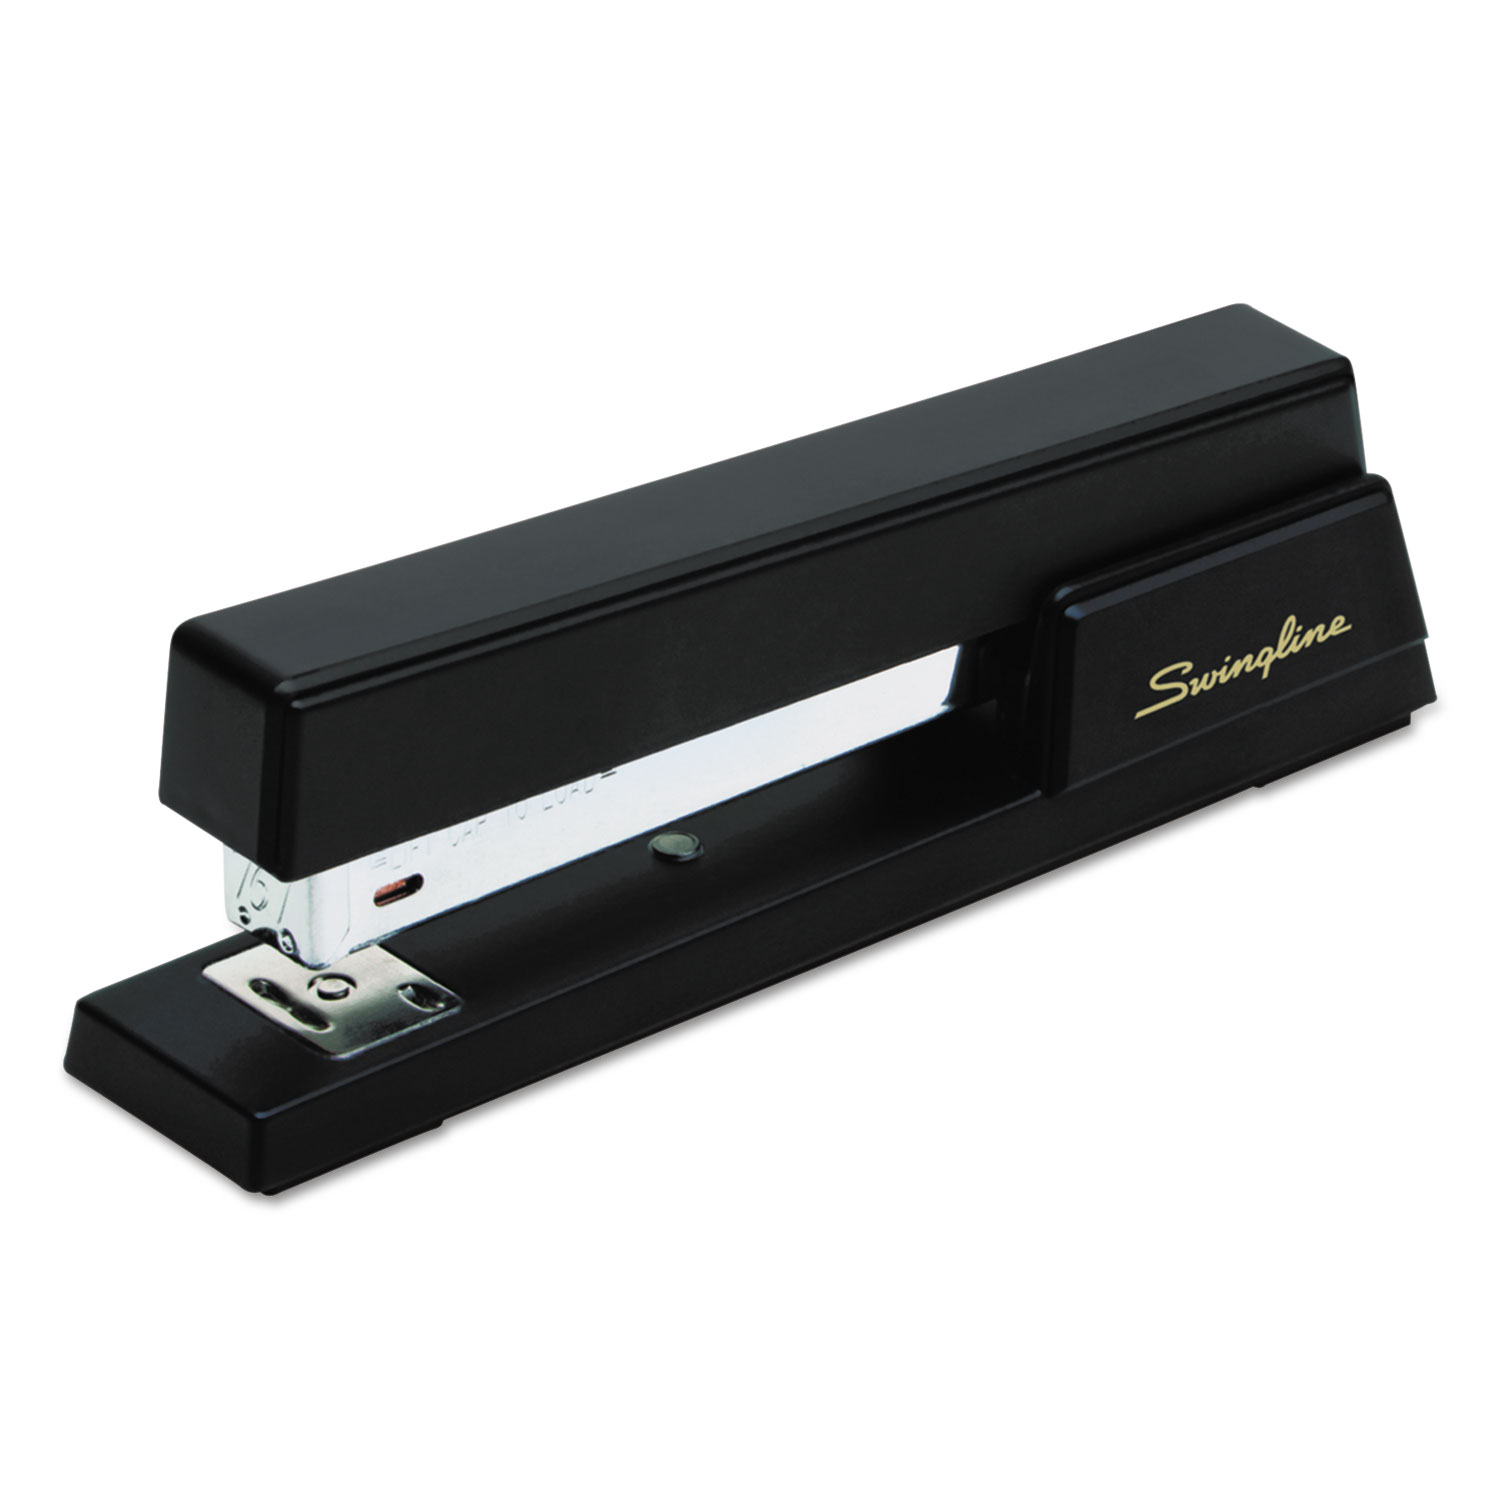  Swingline S7076701E Premium Commercial Full Strip Stapler, 20-Sheet Capacity, Black (SWI76701) 